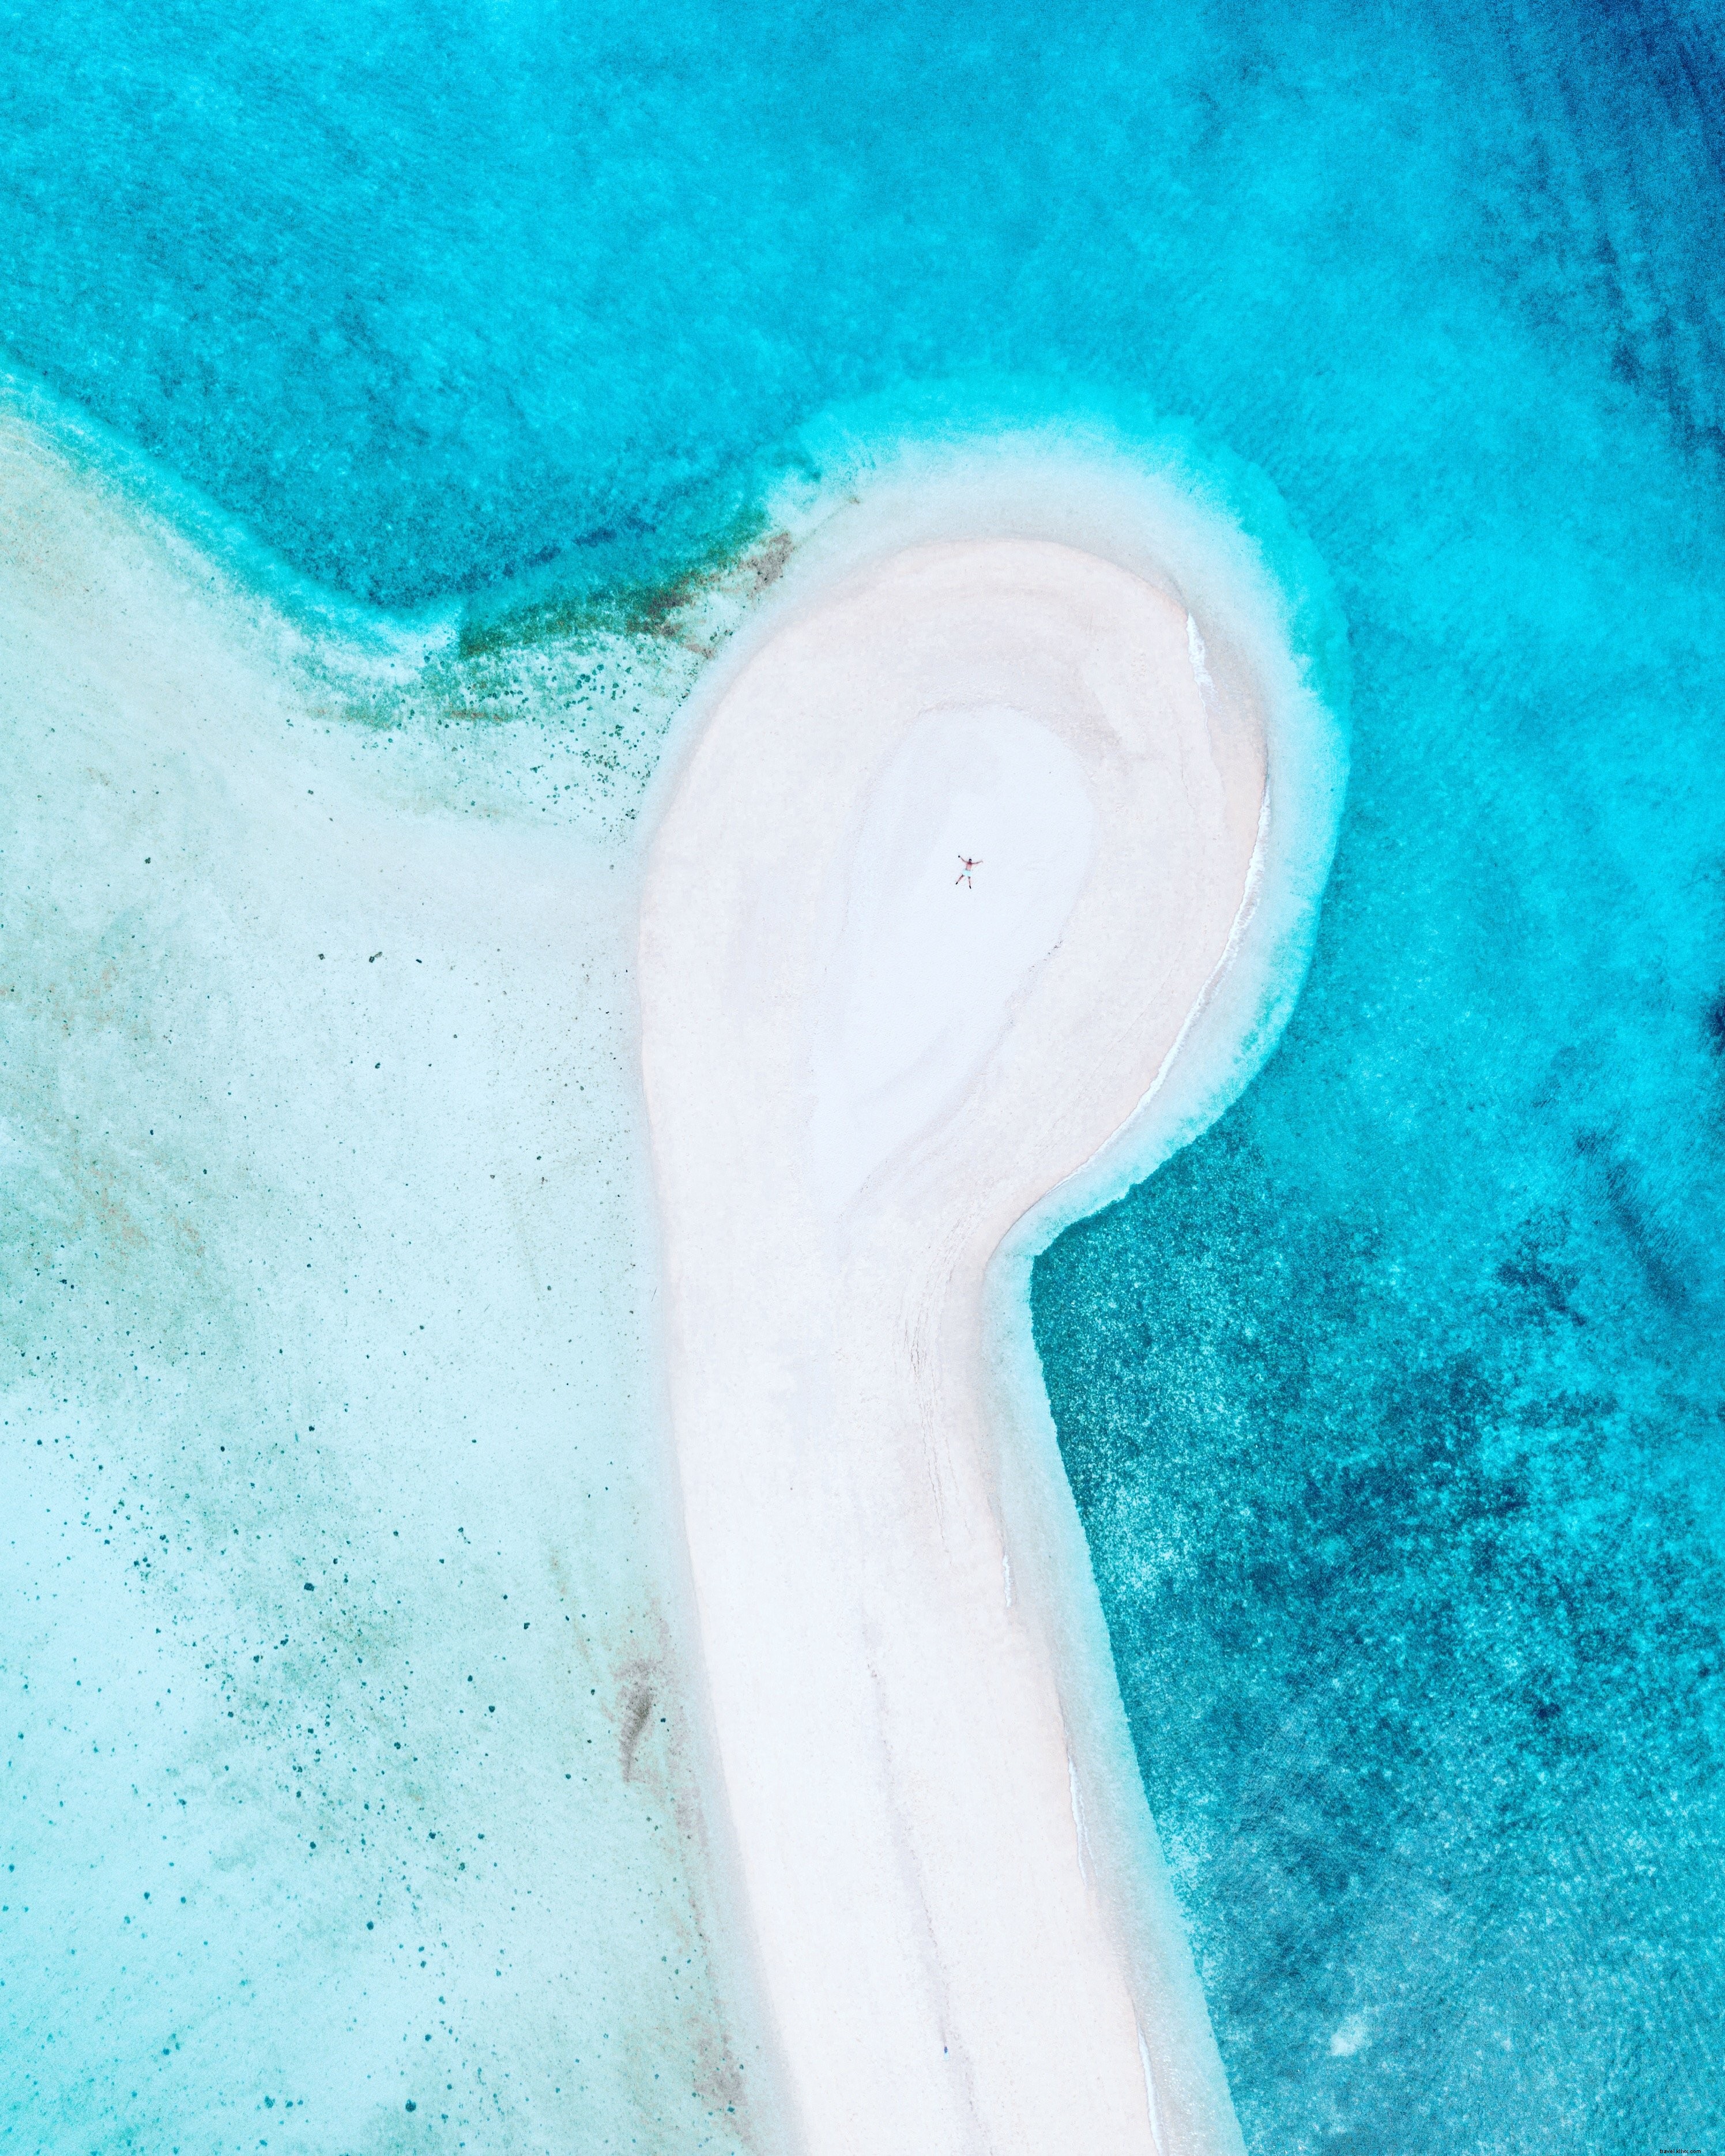 Image de drone de personne sur la plage de sable blanc Photo 